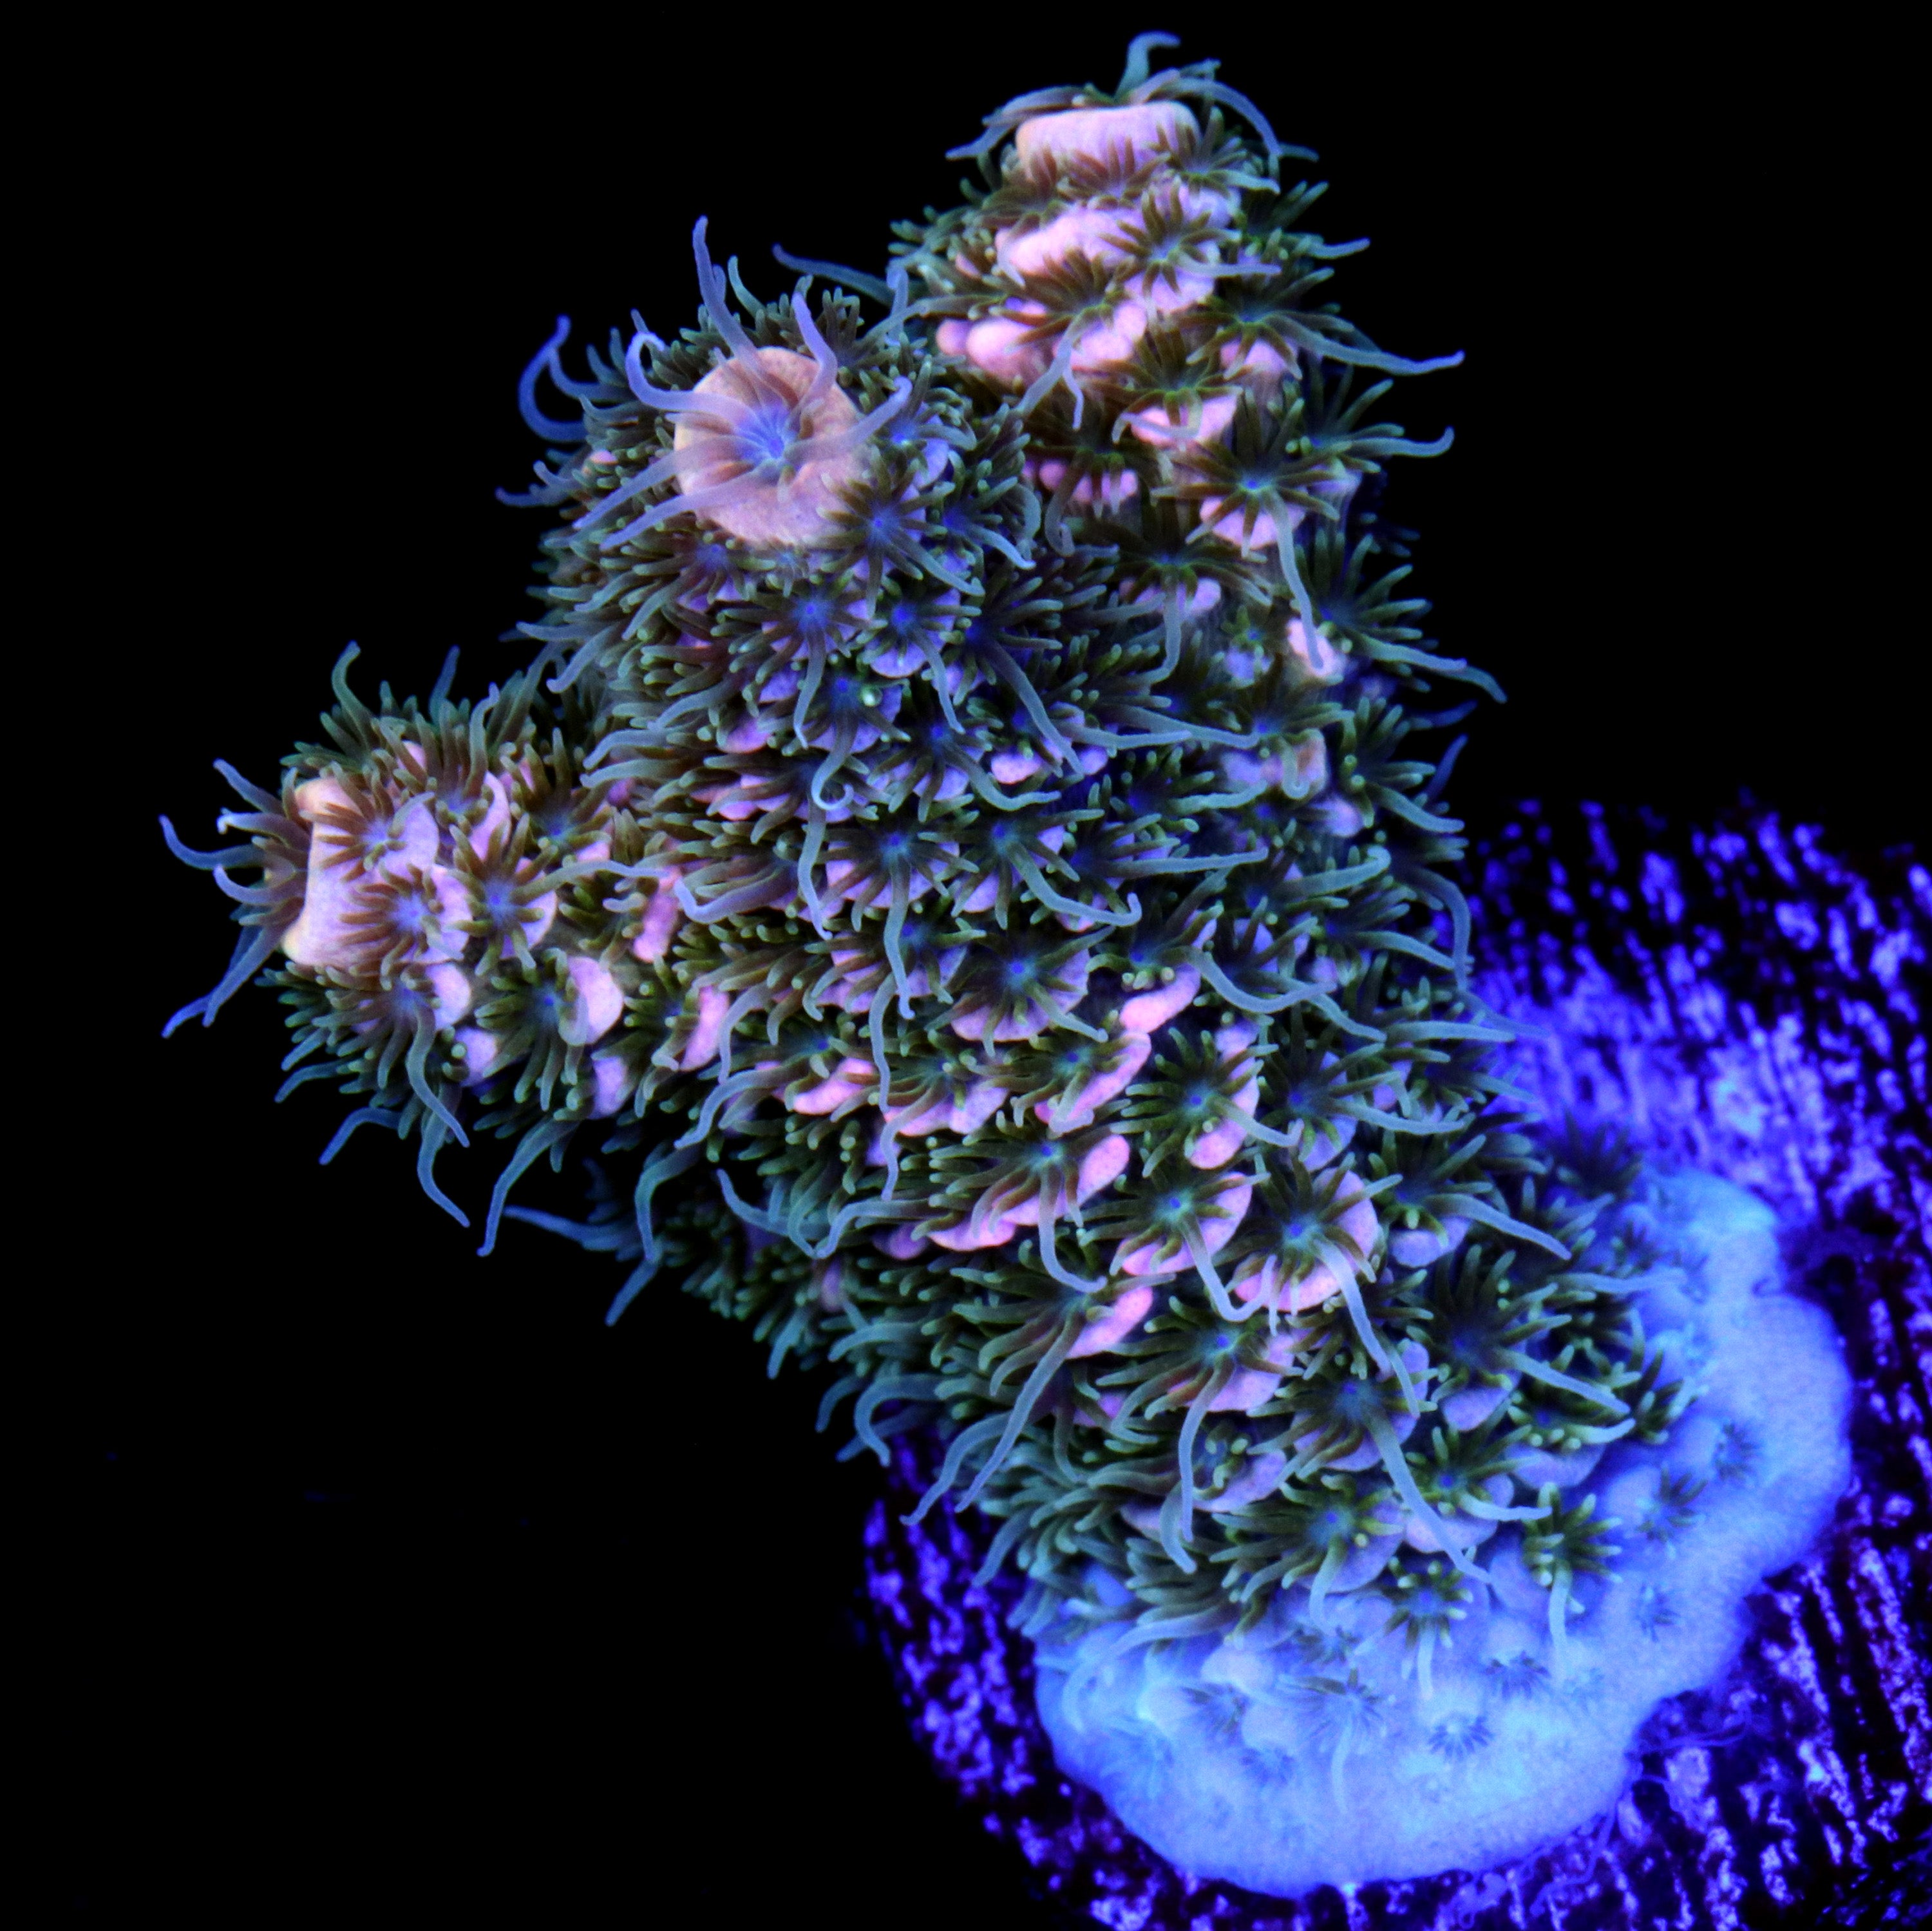 Escurre Biberones Plegable Coral